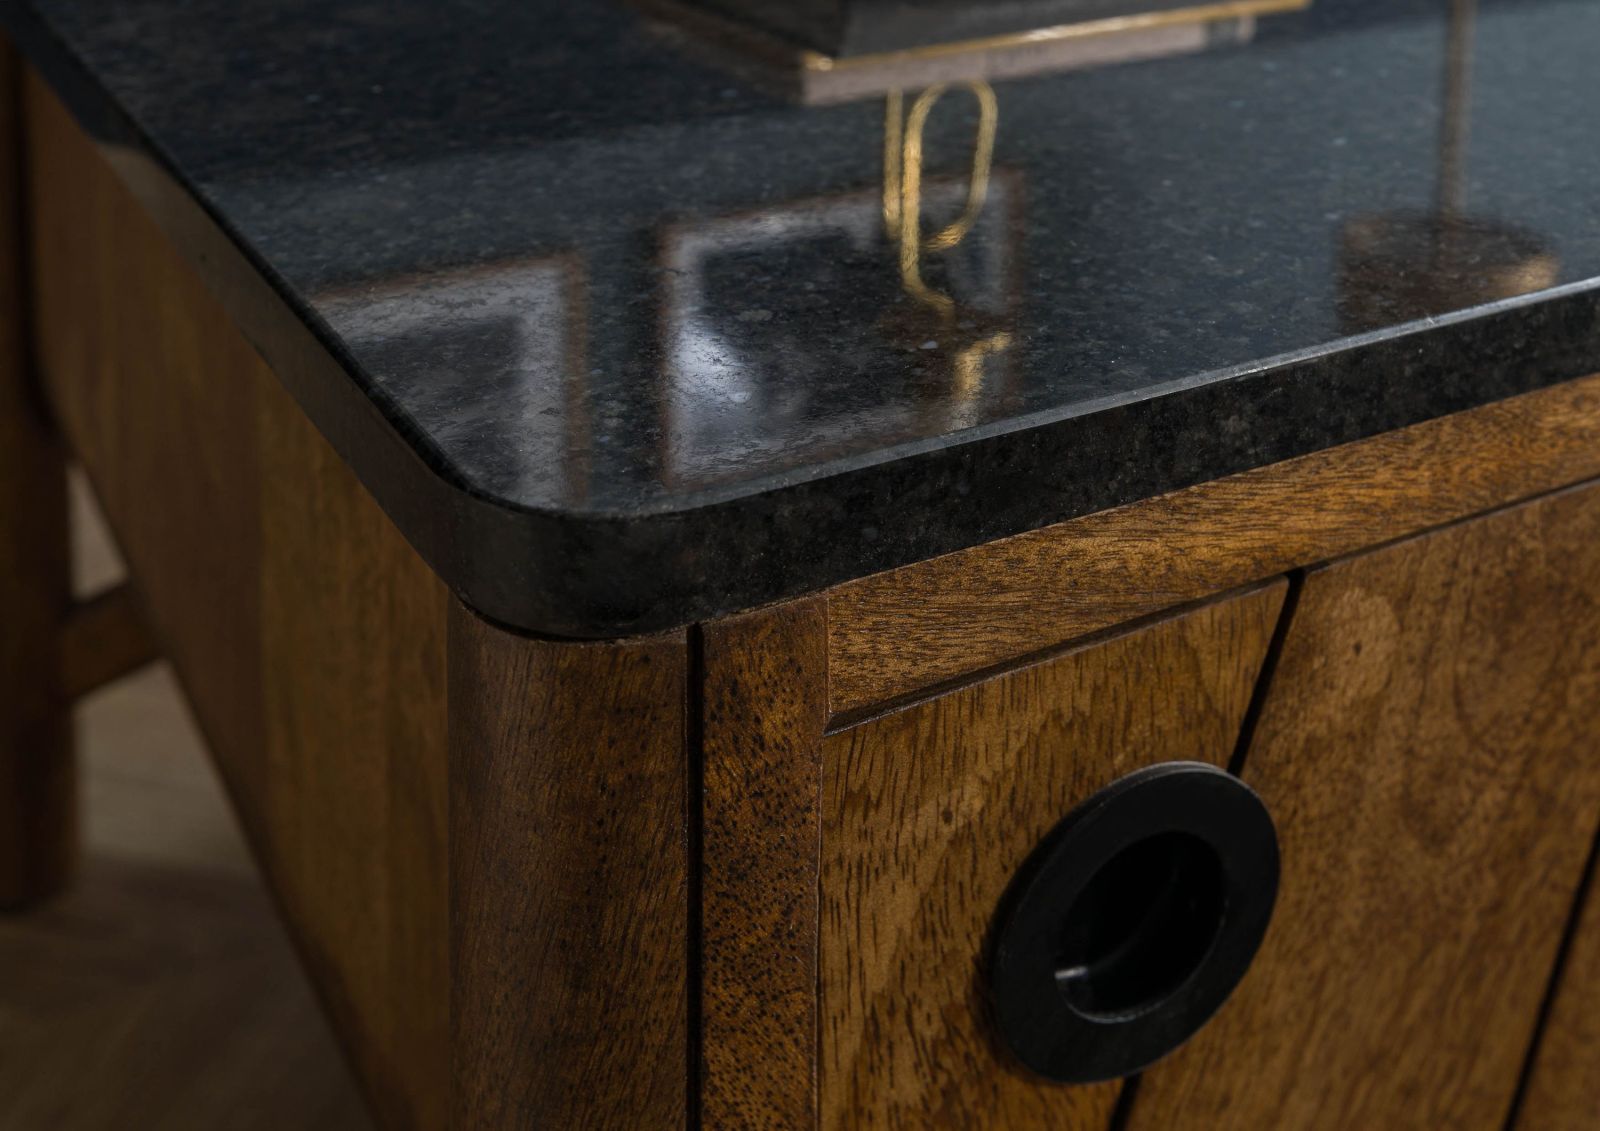 Rund geschliffene Kante eines Möbelstücks mit schwarzer Granit-Platte. Dekorative Objekte spiegeln sich edel auf der schimmernden Oberfläche, zudem entsteht ein attraktiver Kontrast zum Holz.